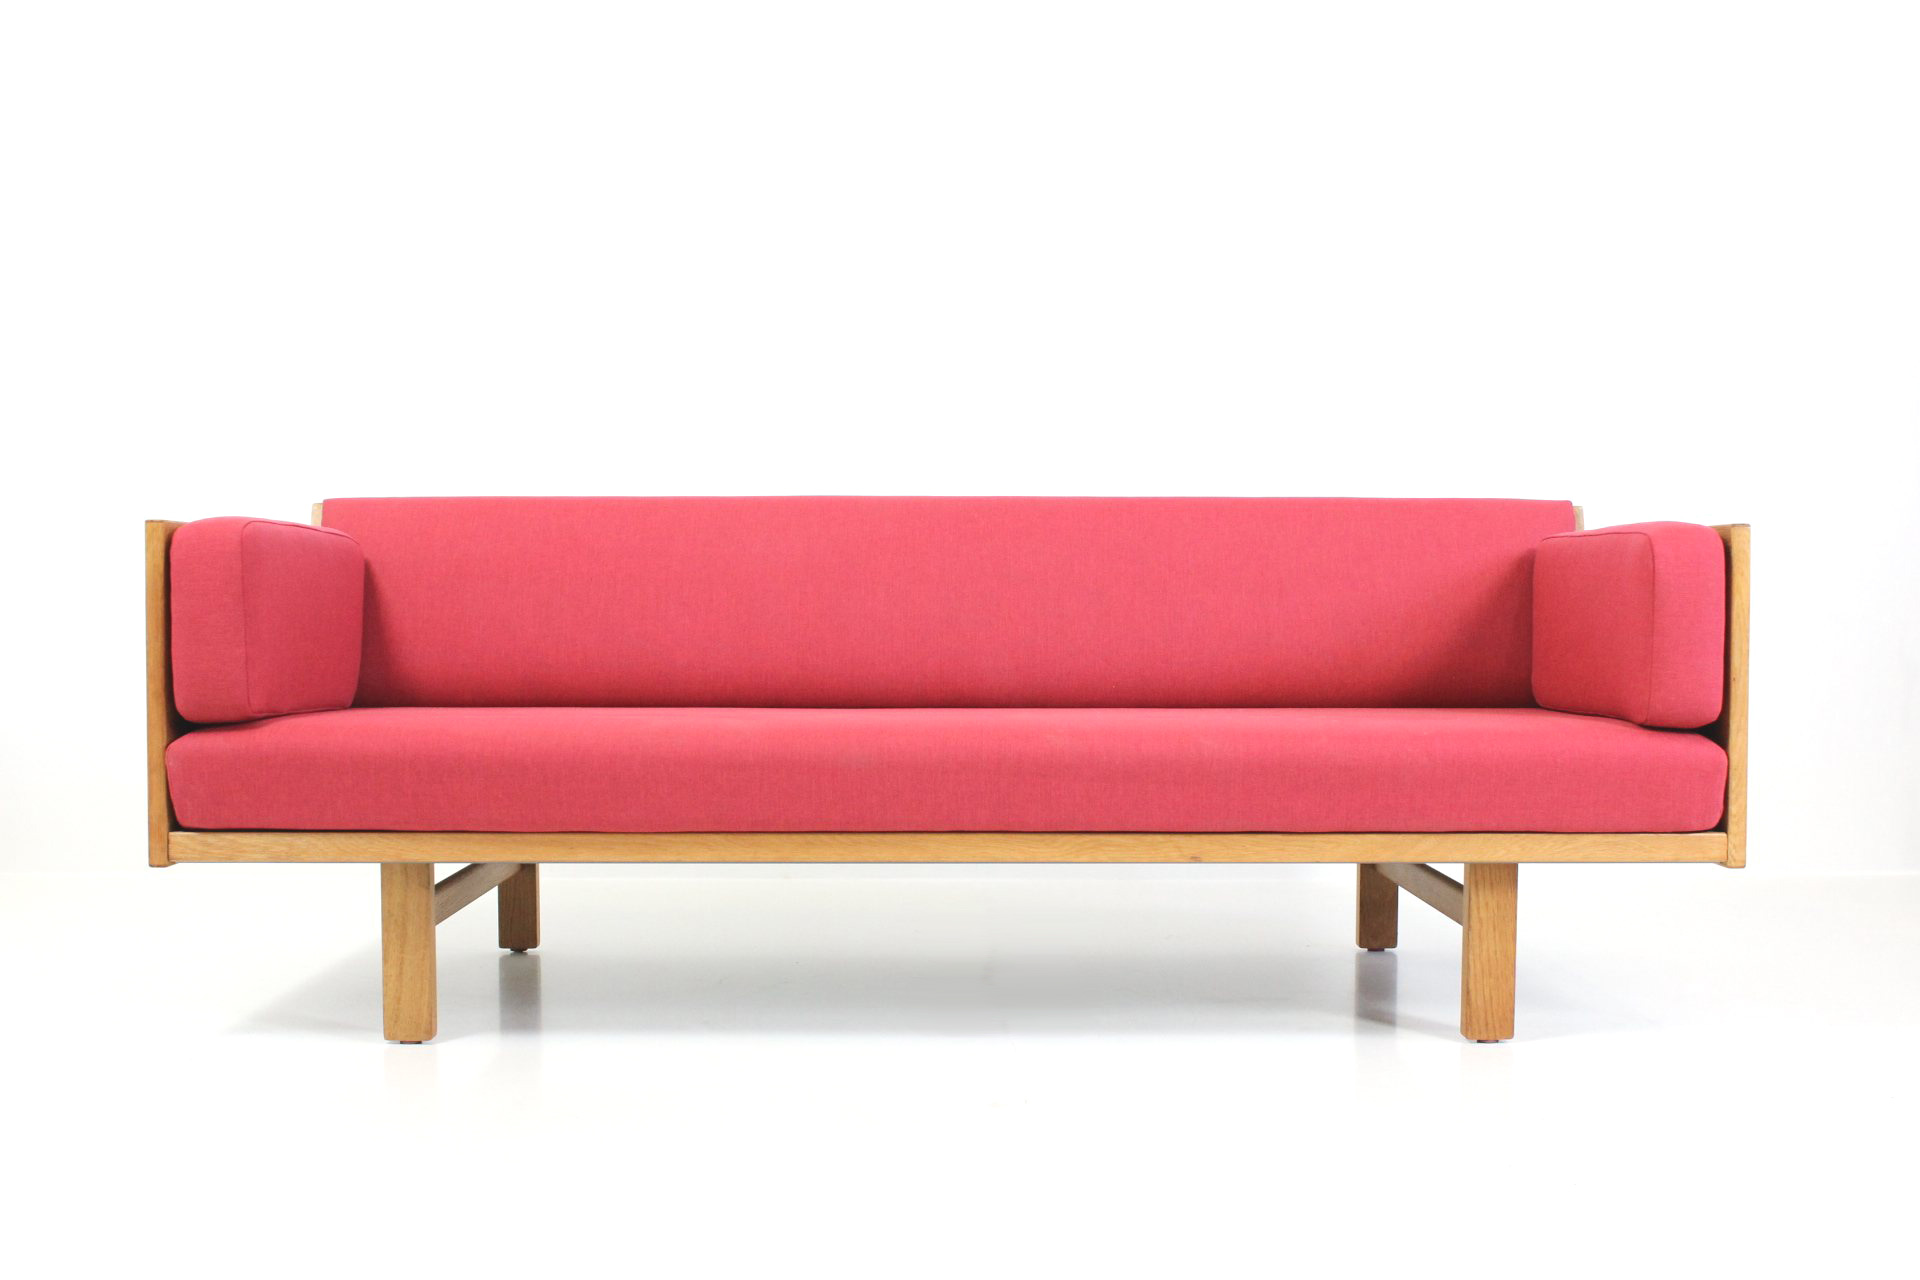 Sofa Hans J. for GETAMA - DAVINT Design - Vintage furniture store